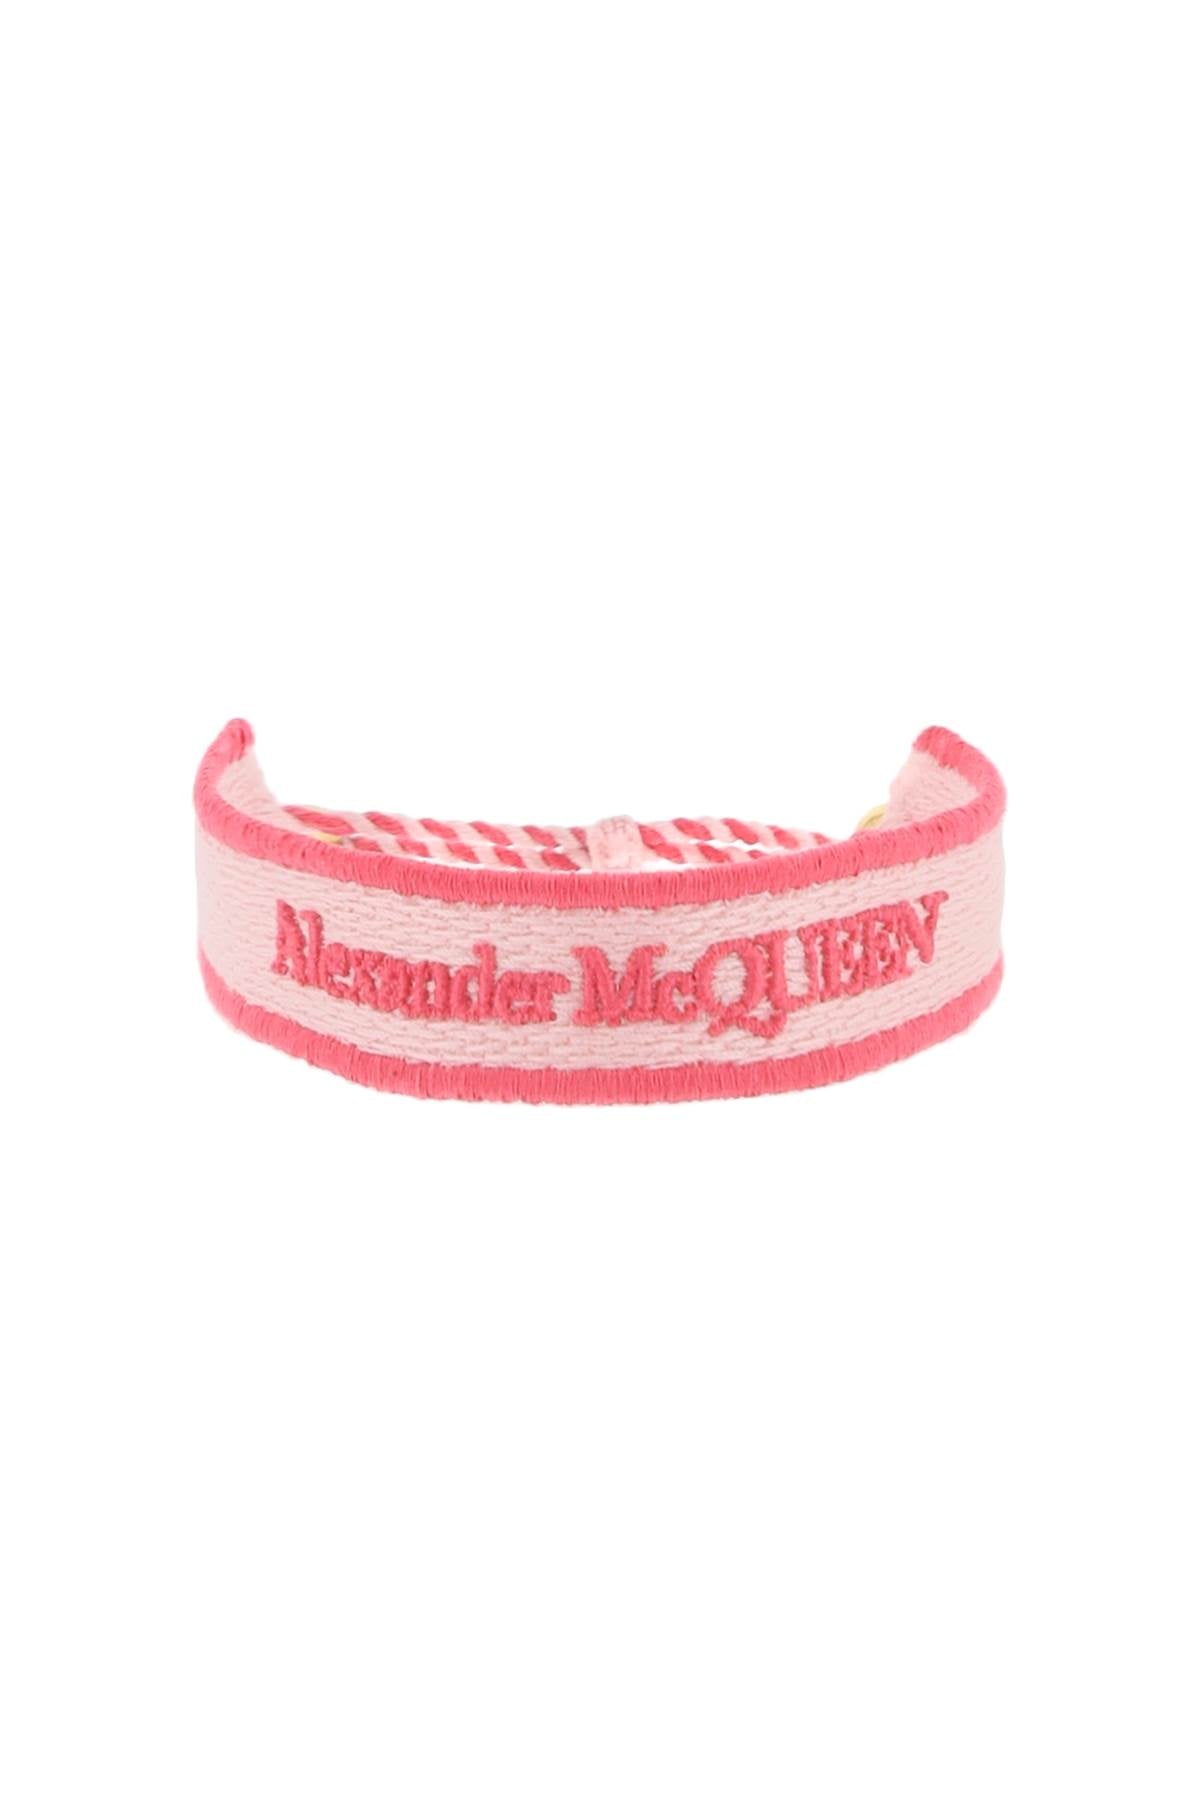 Alexander mcqueen 刺繡手鍊 757439 1AAN1 粉紅色